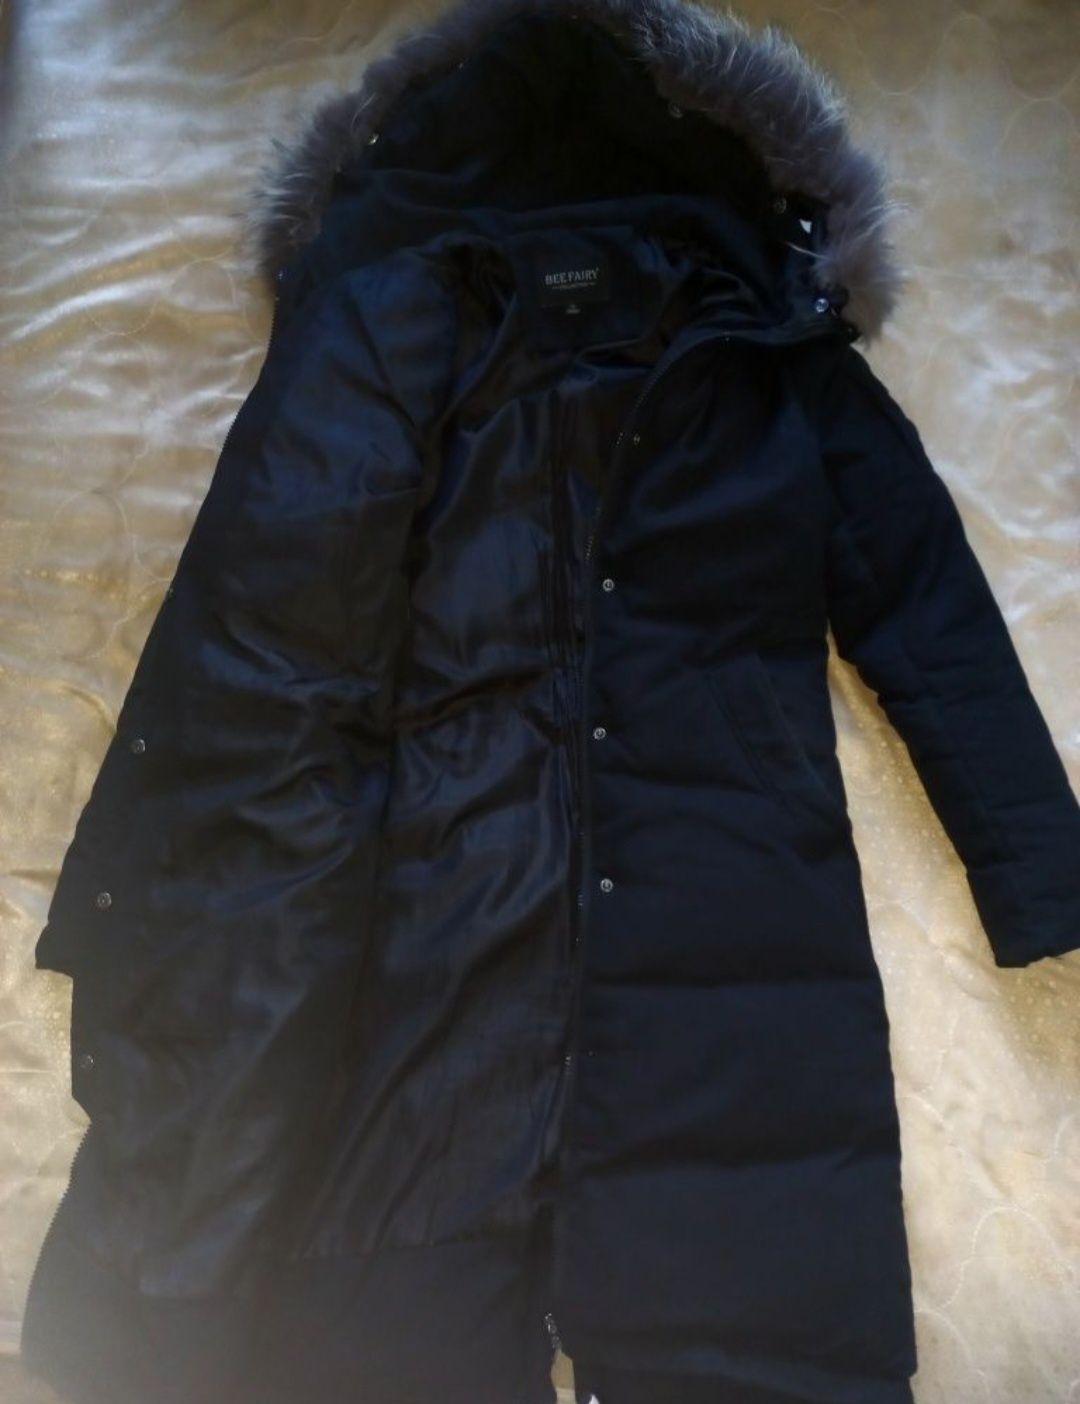 продам зимнюю куртку 
в хорошем состоянии 
размер (42-44)
цена 12 000